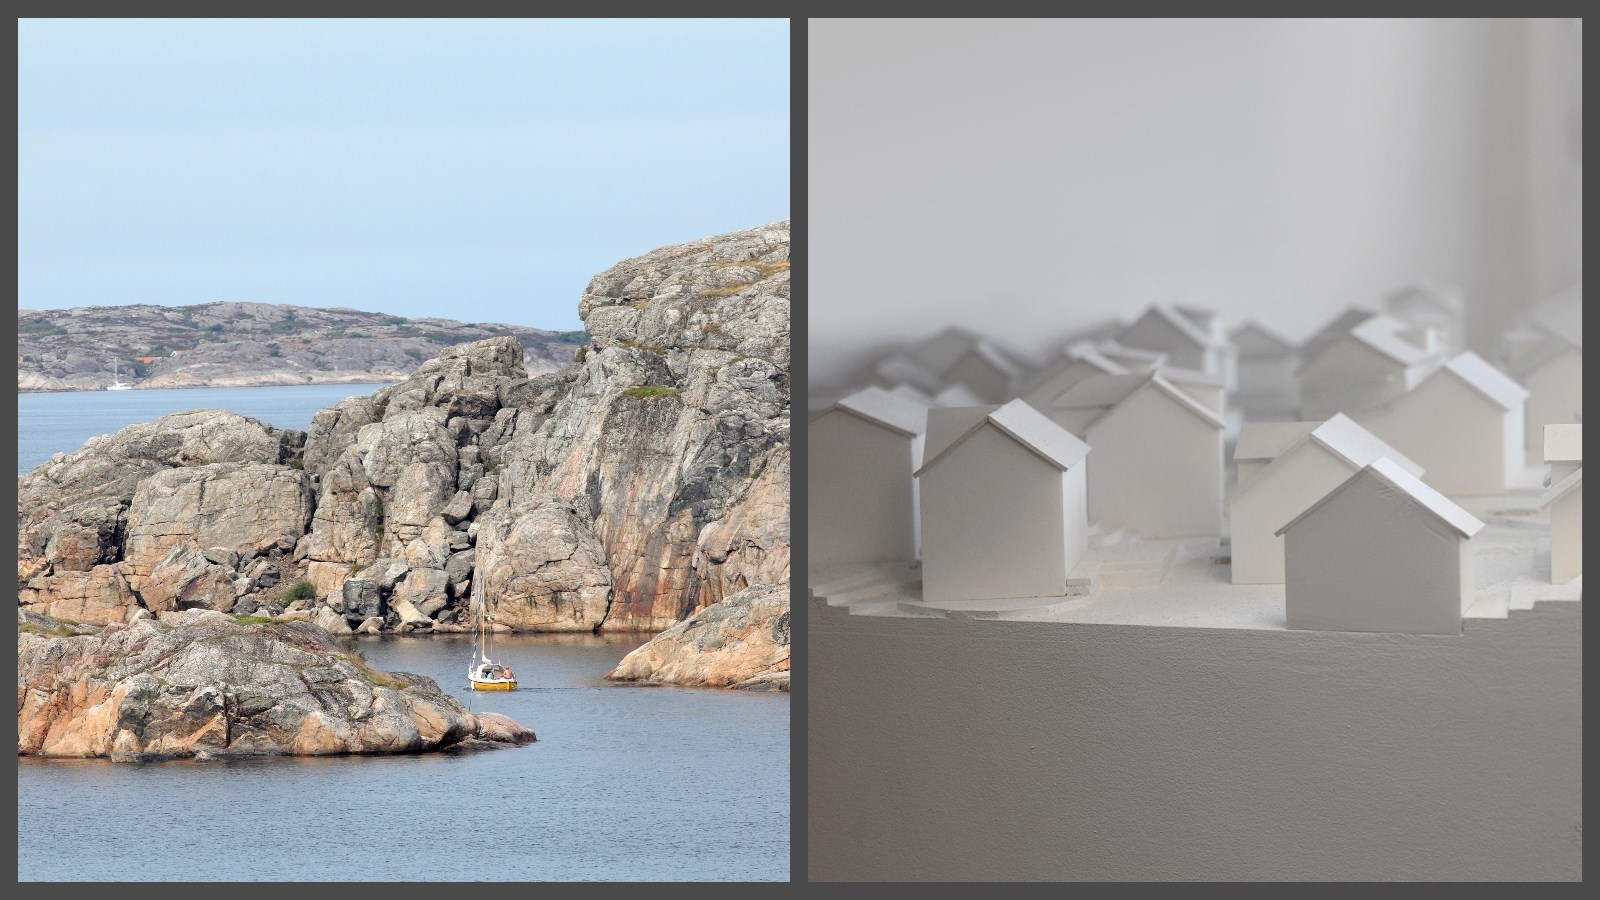 Ett bildcollage med två bilder. Den ena föreställer klippor, hav och en båt. Den andra föreställer små vita hus, i en stadsplaneringsmodell.